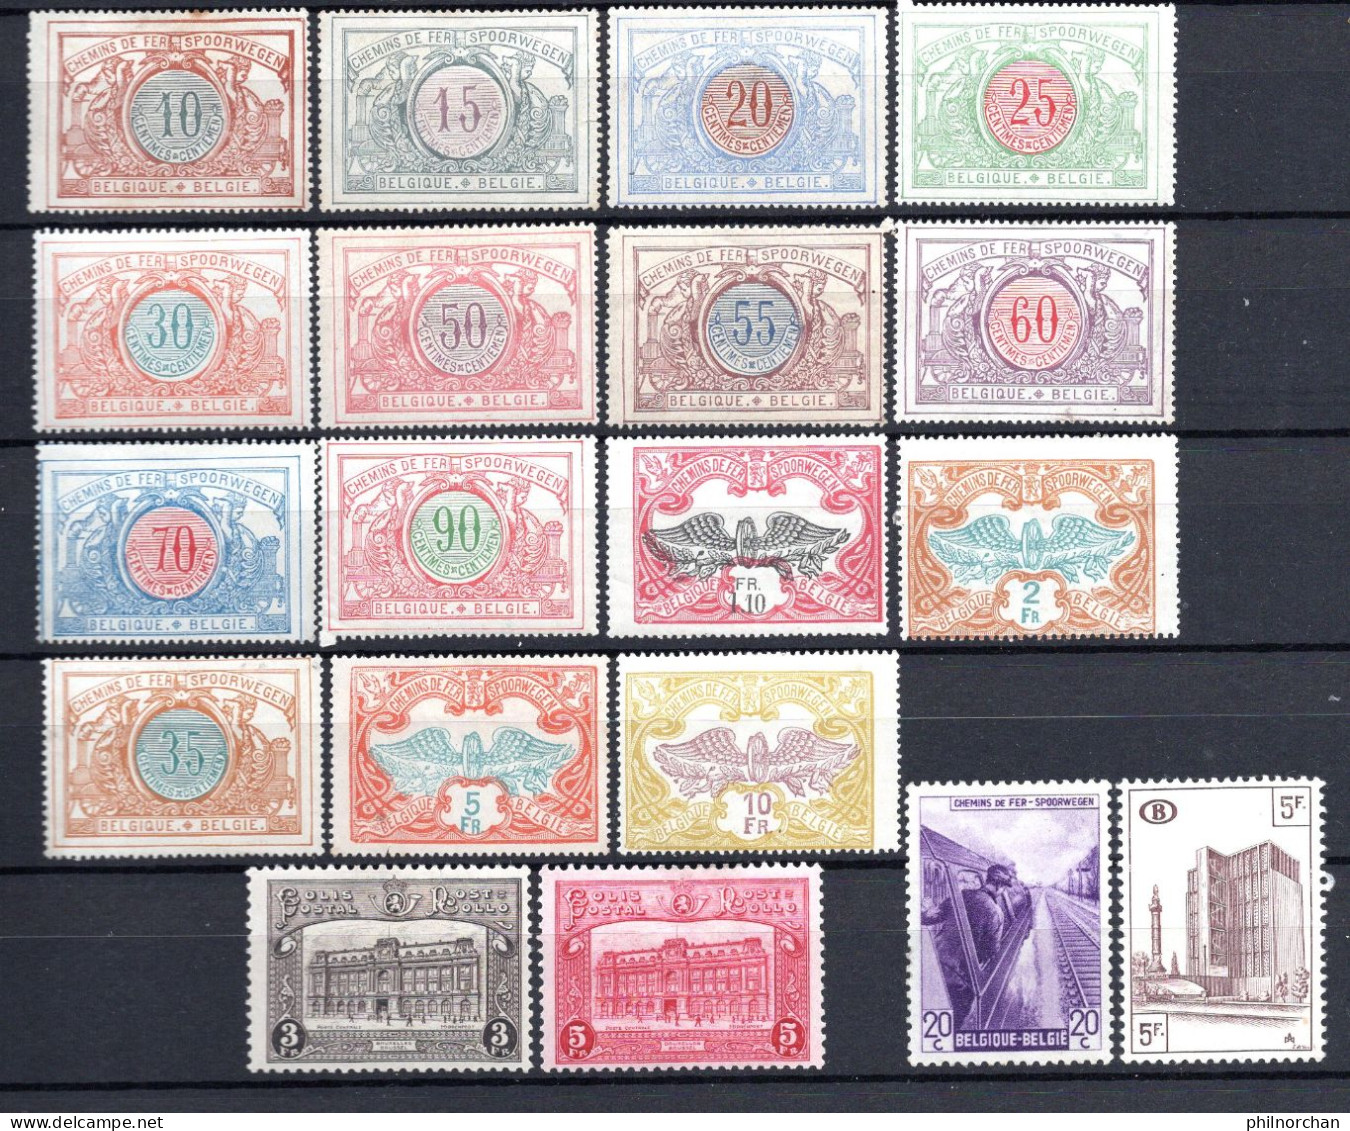 Belgique 1902à1953 Colis Postaux Neufs  0,80 €   19 Timbres Différents   (cote 7,90 €, 19 Valeurs) - Nuevos